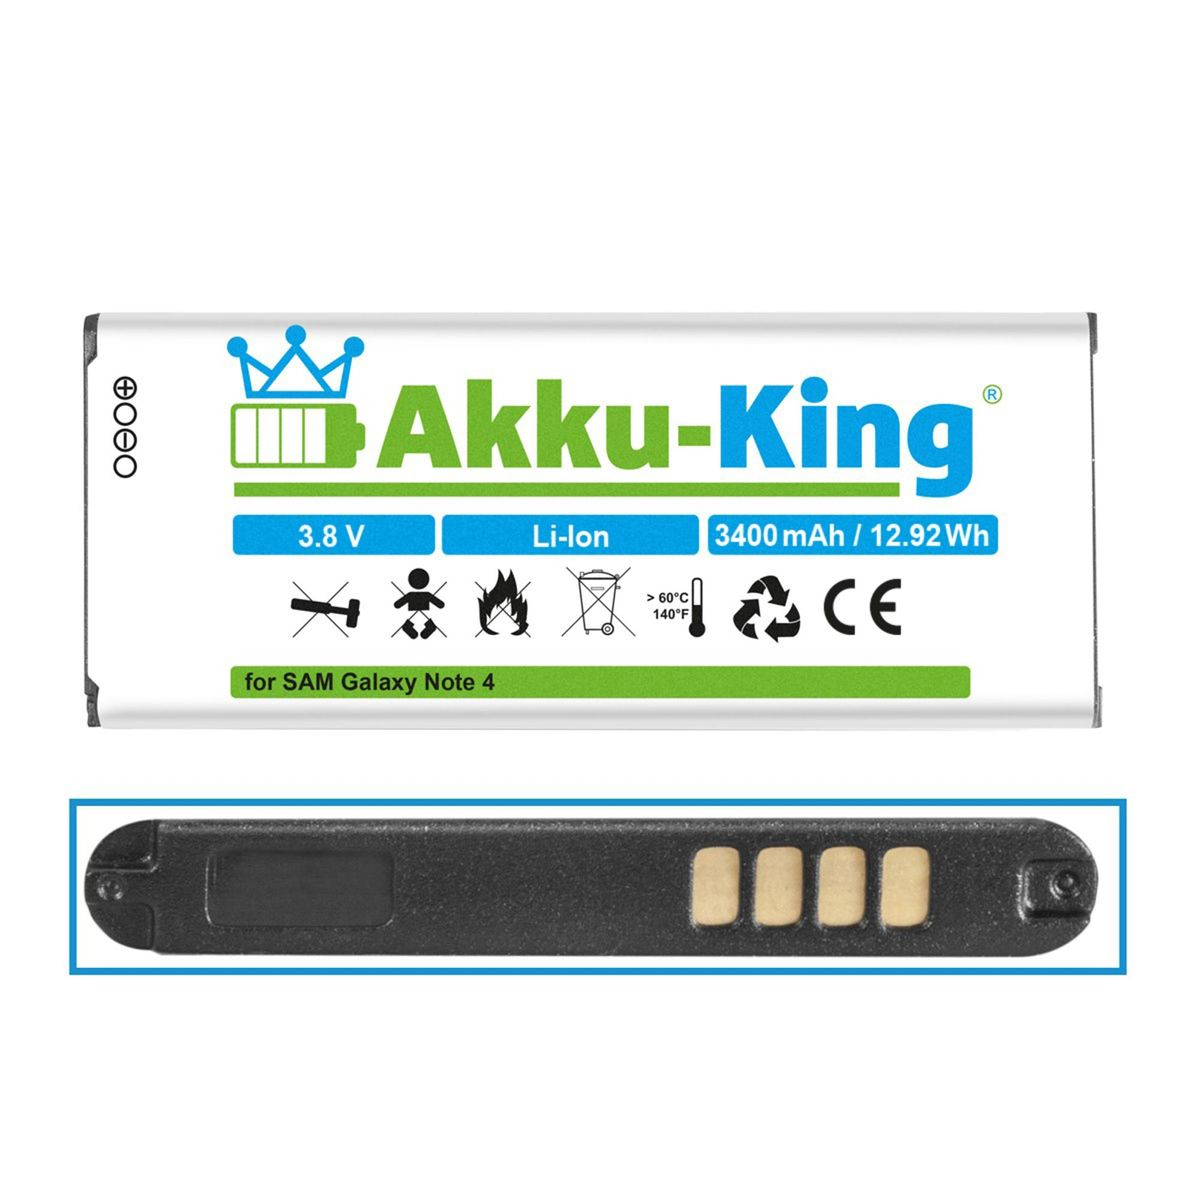 Volt, Akku Samsung AKKU-KING mit Li-Ion kompatibel EB-BN910BBE Handy-Akku, 3.8 3400mAh